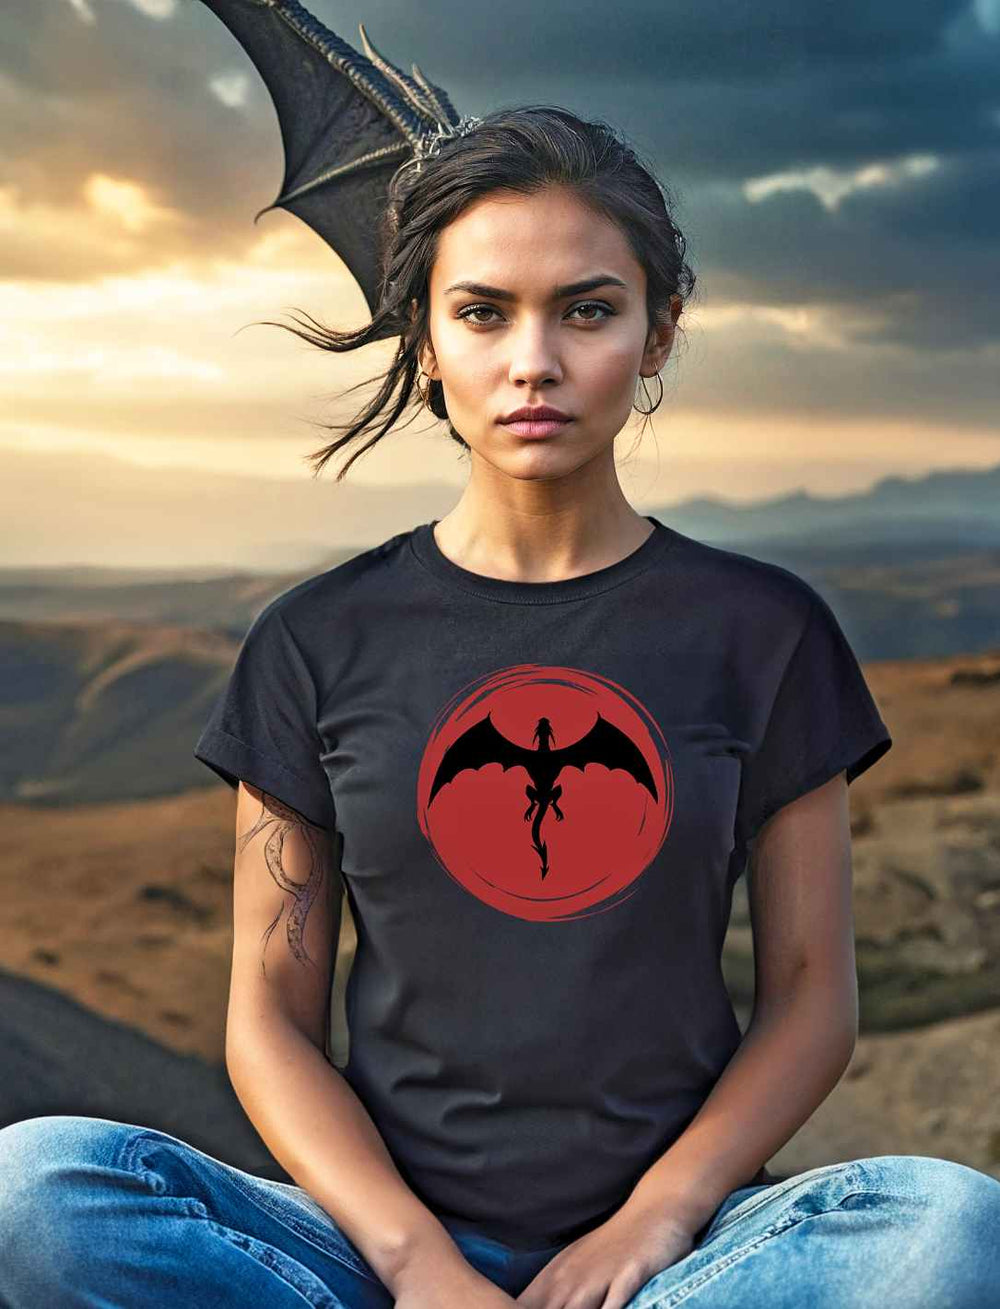 Junge Frau in 'Saga of the Dragon' T-Shirt in Schwarz, posiert mit dem Hintergrund eines imposanten, fliegenden Drachens, symbolisierend die Kraft und Mystik der Legende.